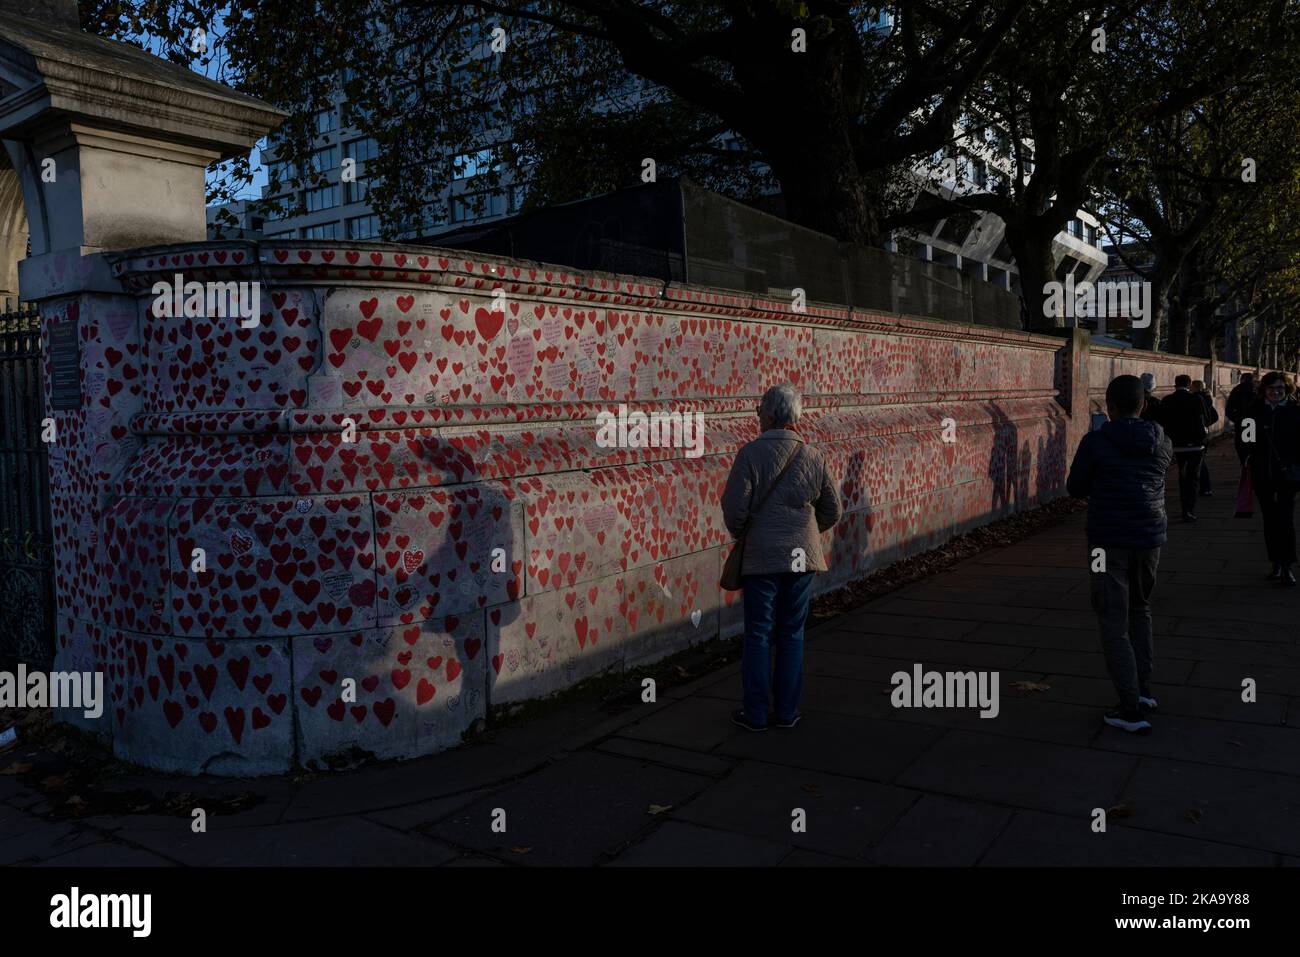 El Muro Conmemorativo Nacional de Covid al atardecer, un muro de kilómetros de longitud en el Southbank, decorado con corazones amorosos, nombres, fechas y mensajes, Londres, REINO UNIDO Foto de stock